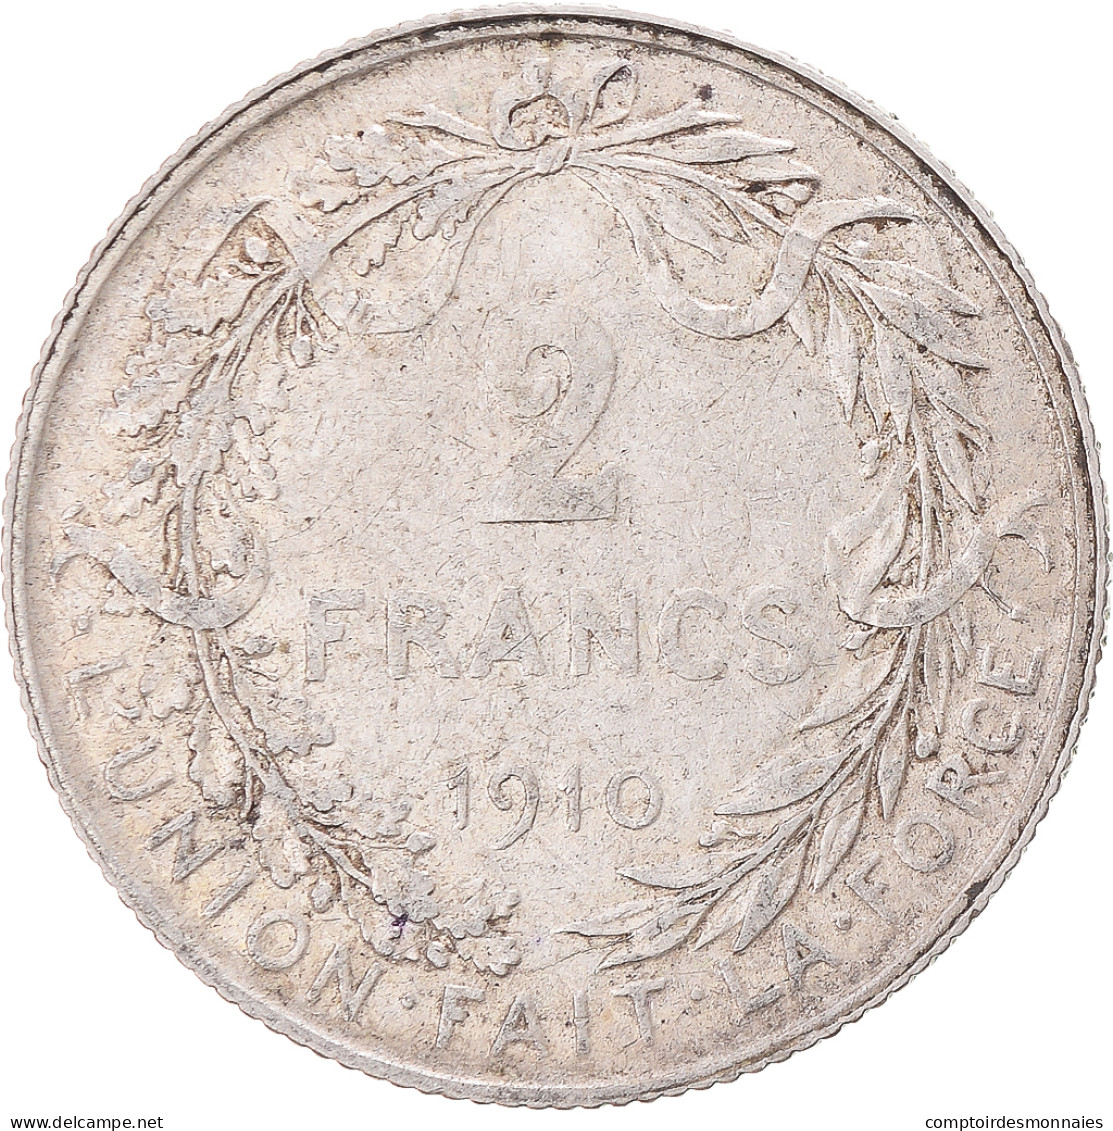 Monnaie, Belgique, 2 Francs, 2 Frank, 1910, TB+, Argent, KM:74 - 2 Francs